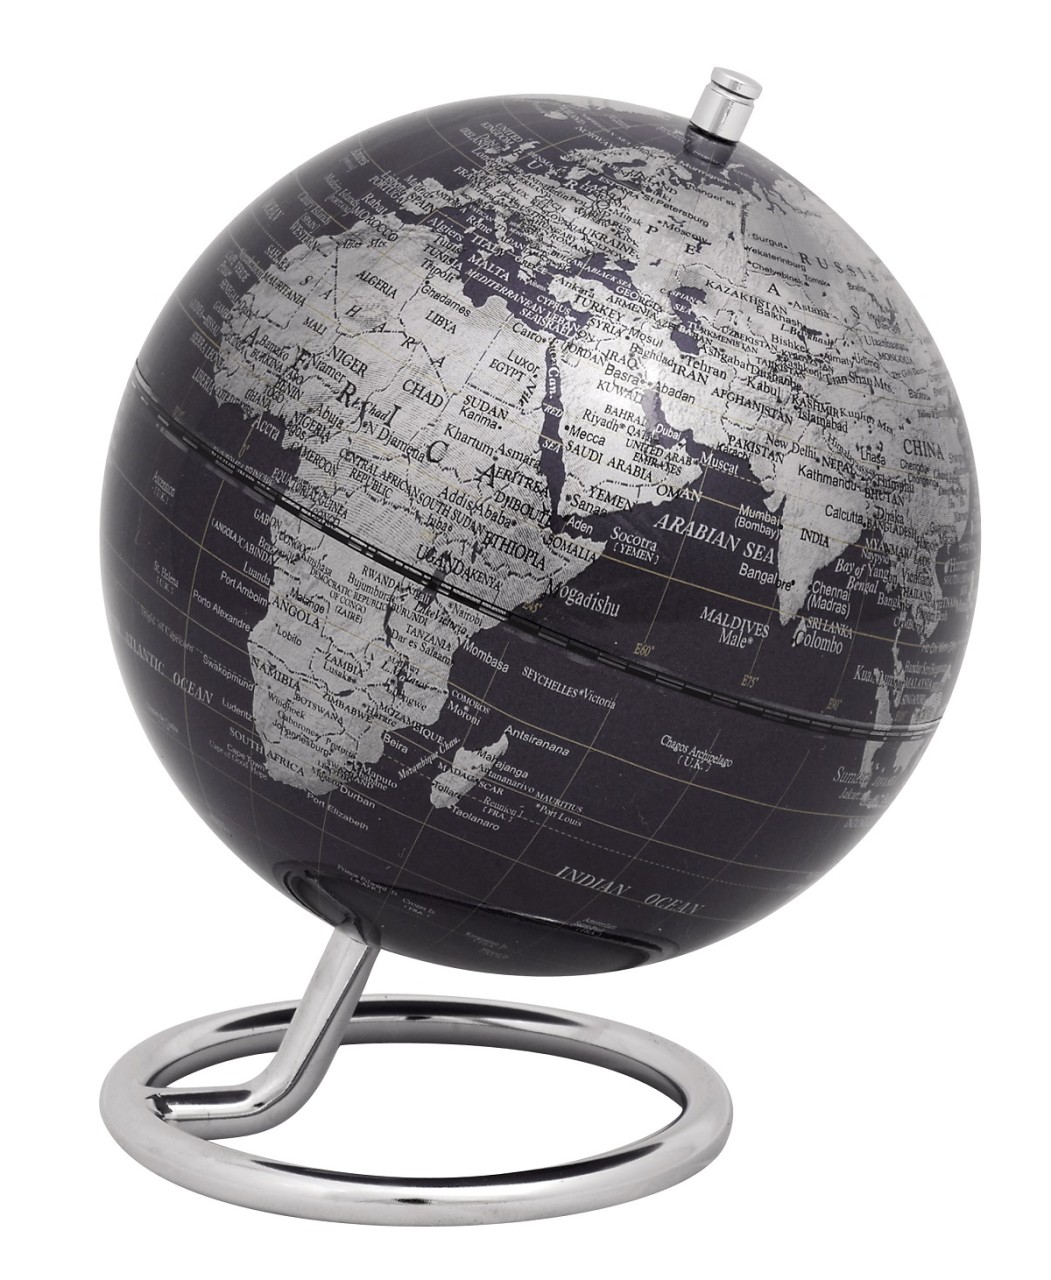 Globus Galilei